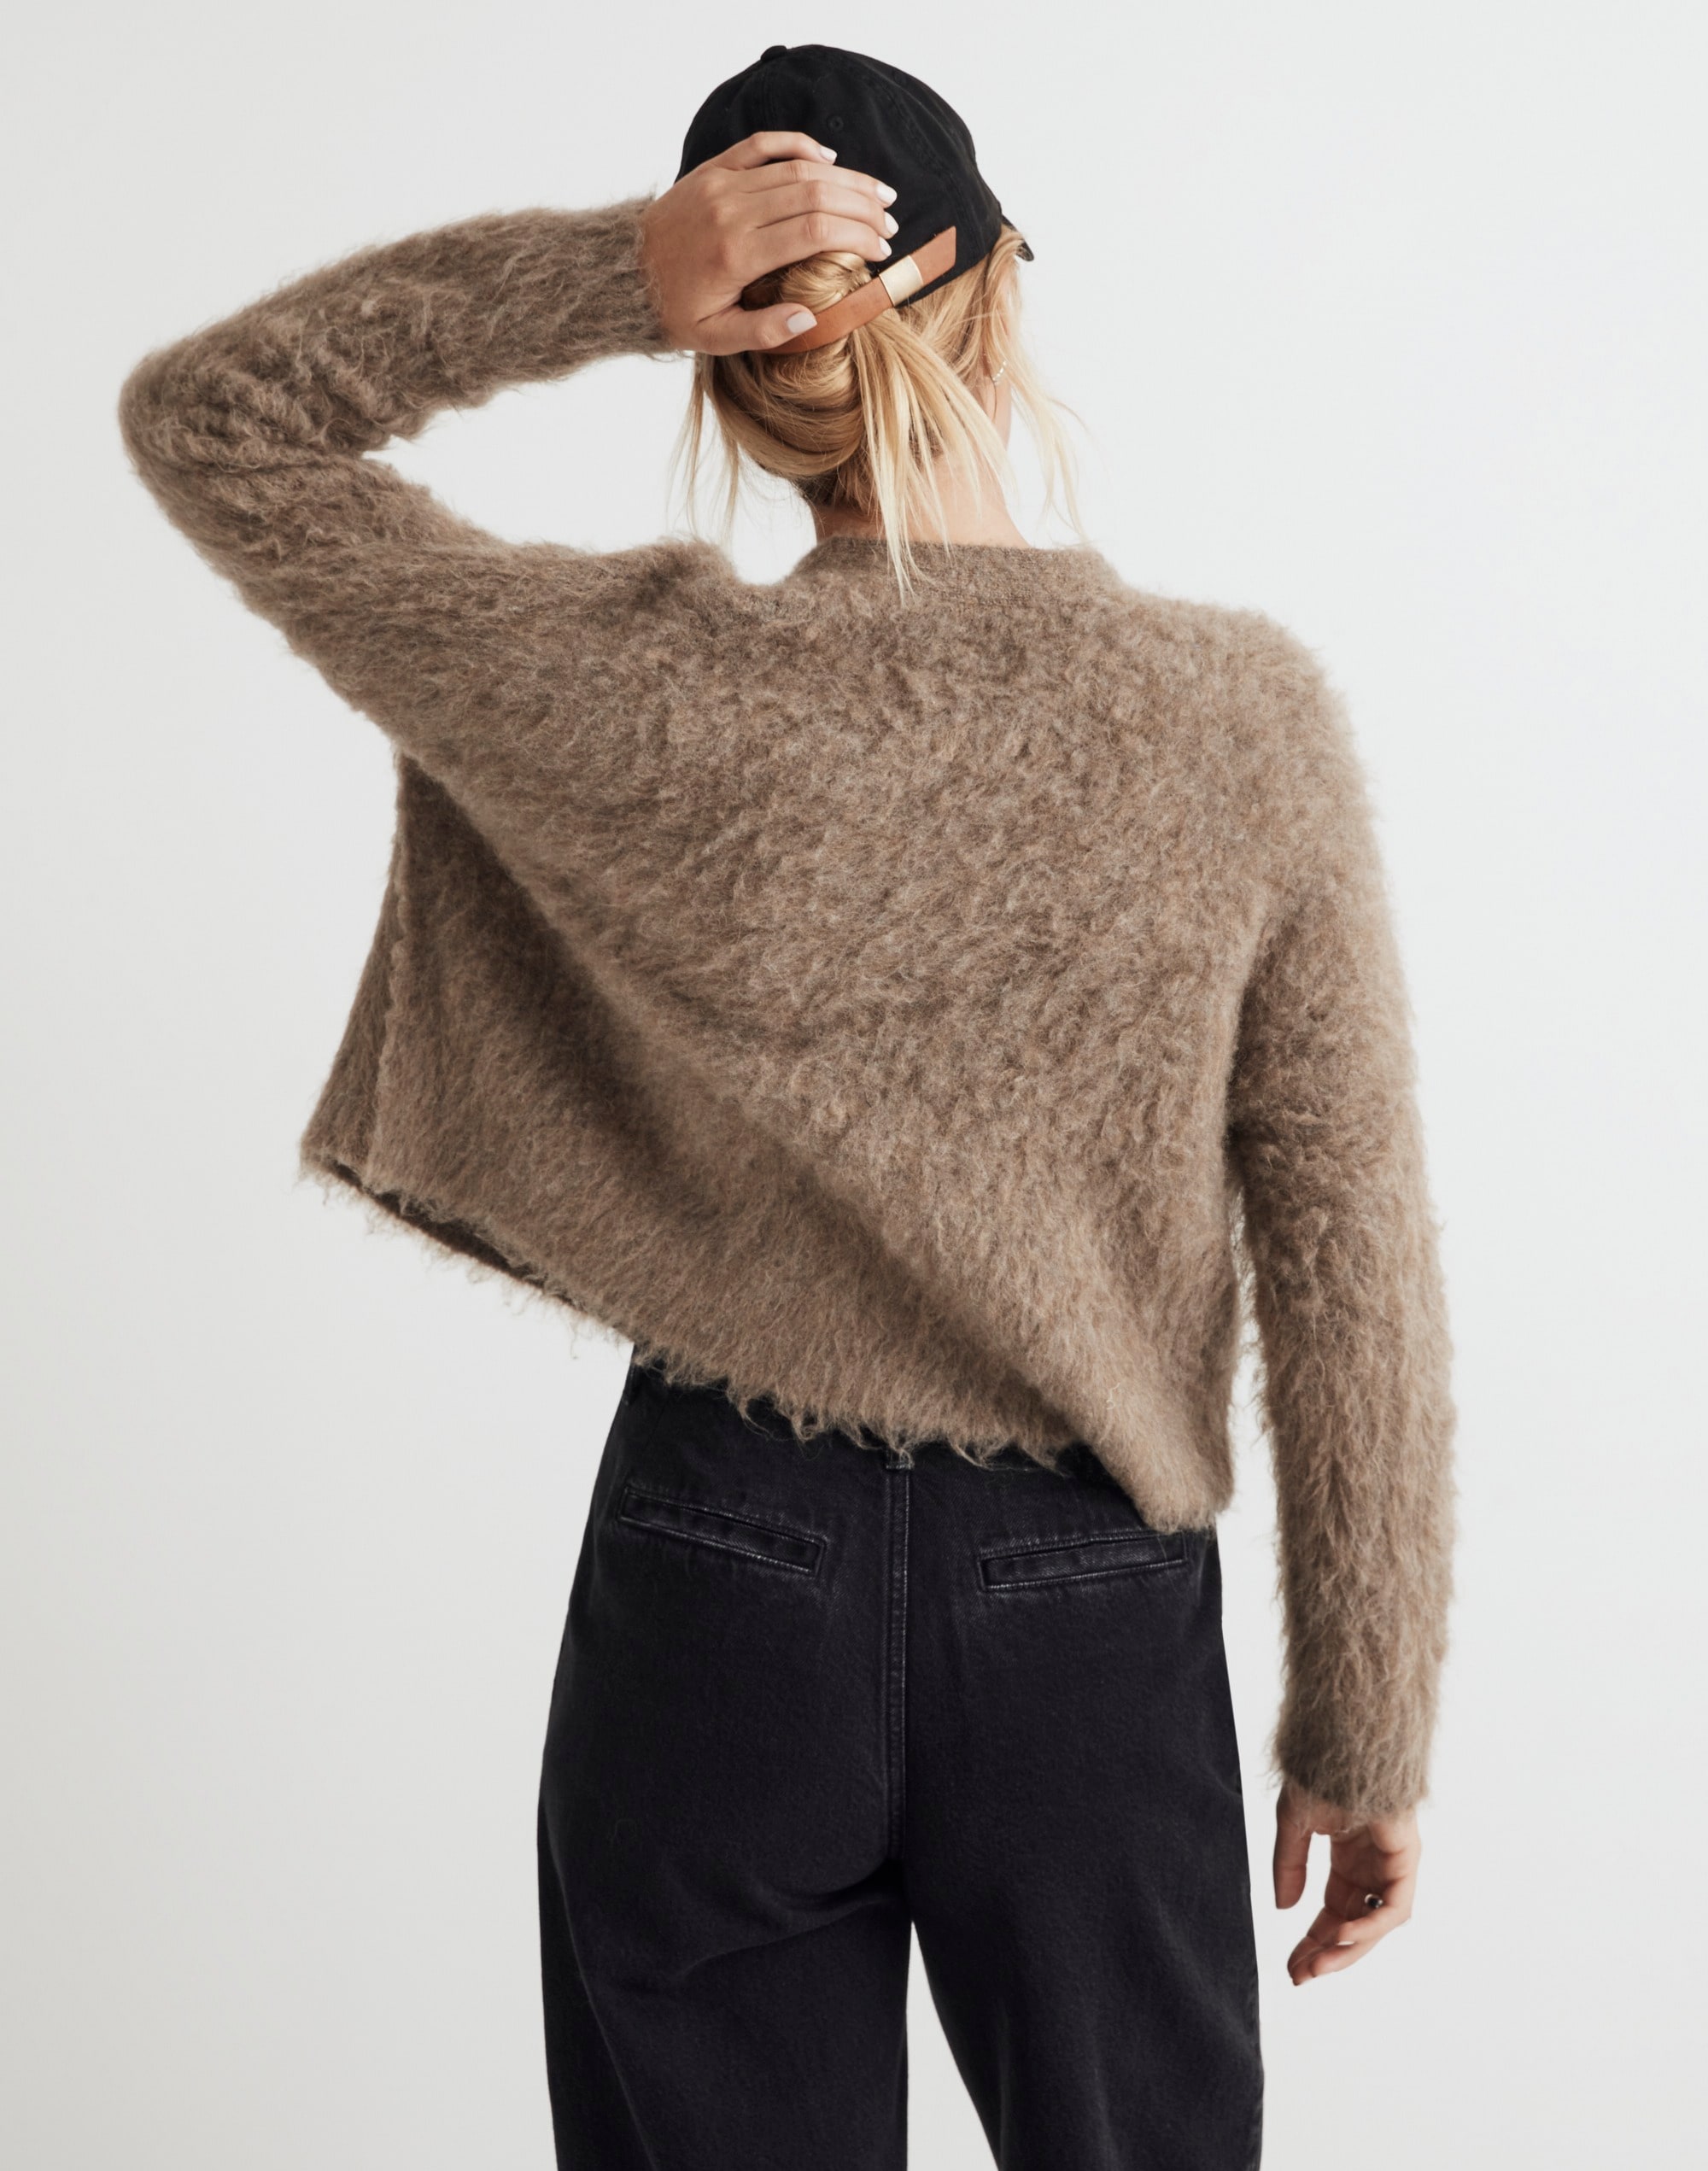 Brushed V-Neck Cardigan Sweater